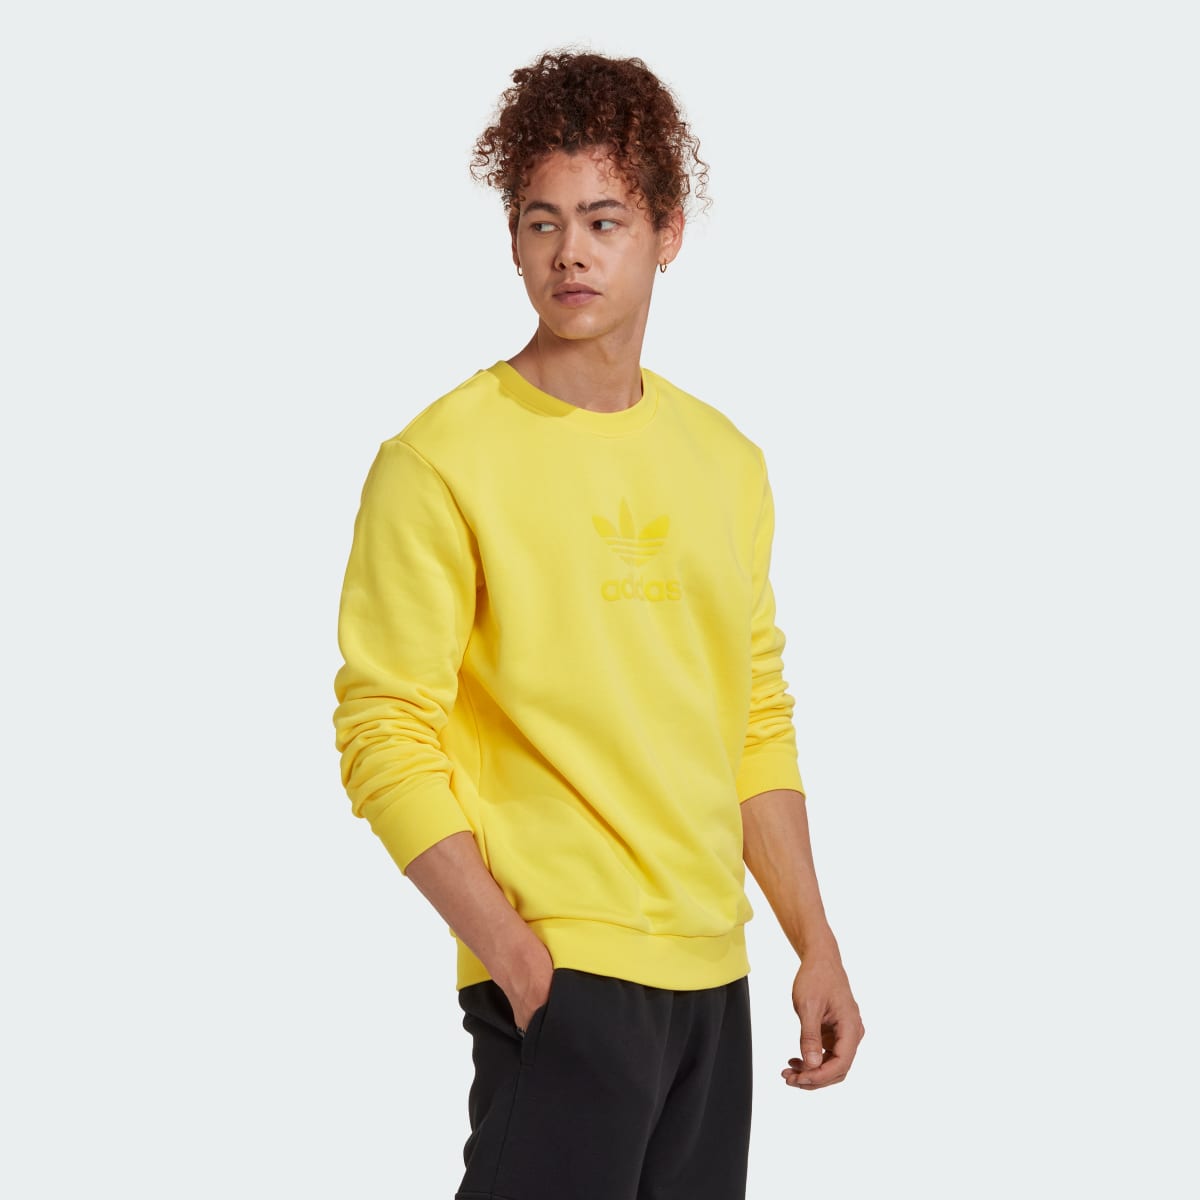 Adidas Trefoil Series Street Sweatshirt. 4